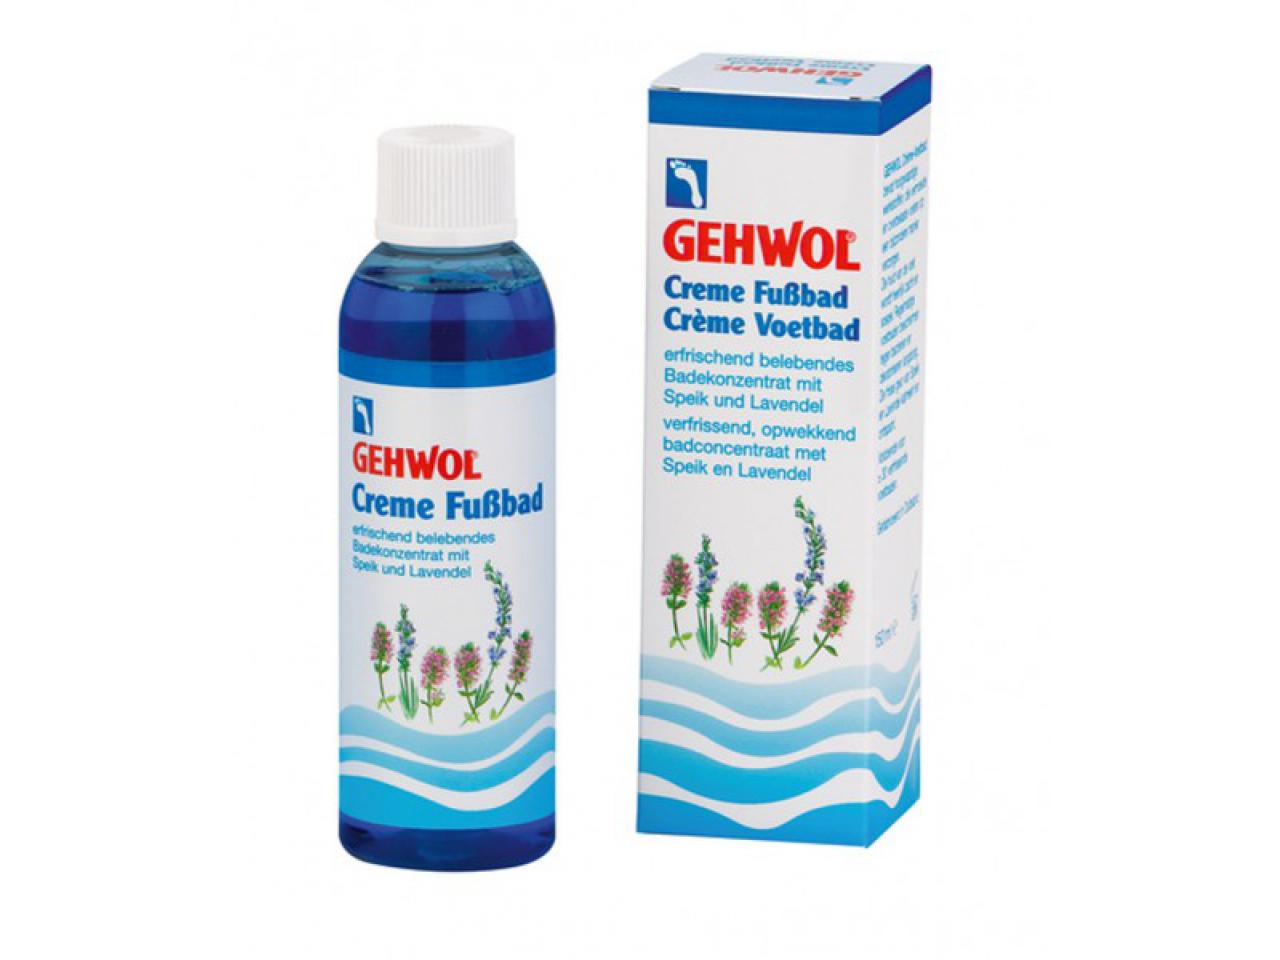 GEHWOL Creme Fußbad | 150 ml Flasche